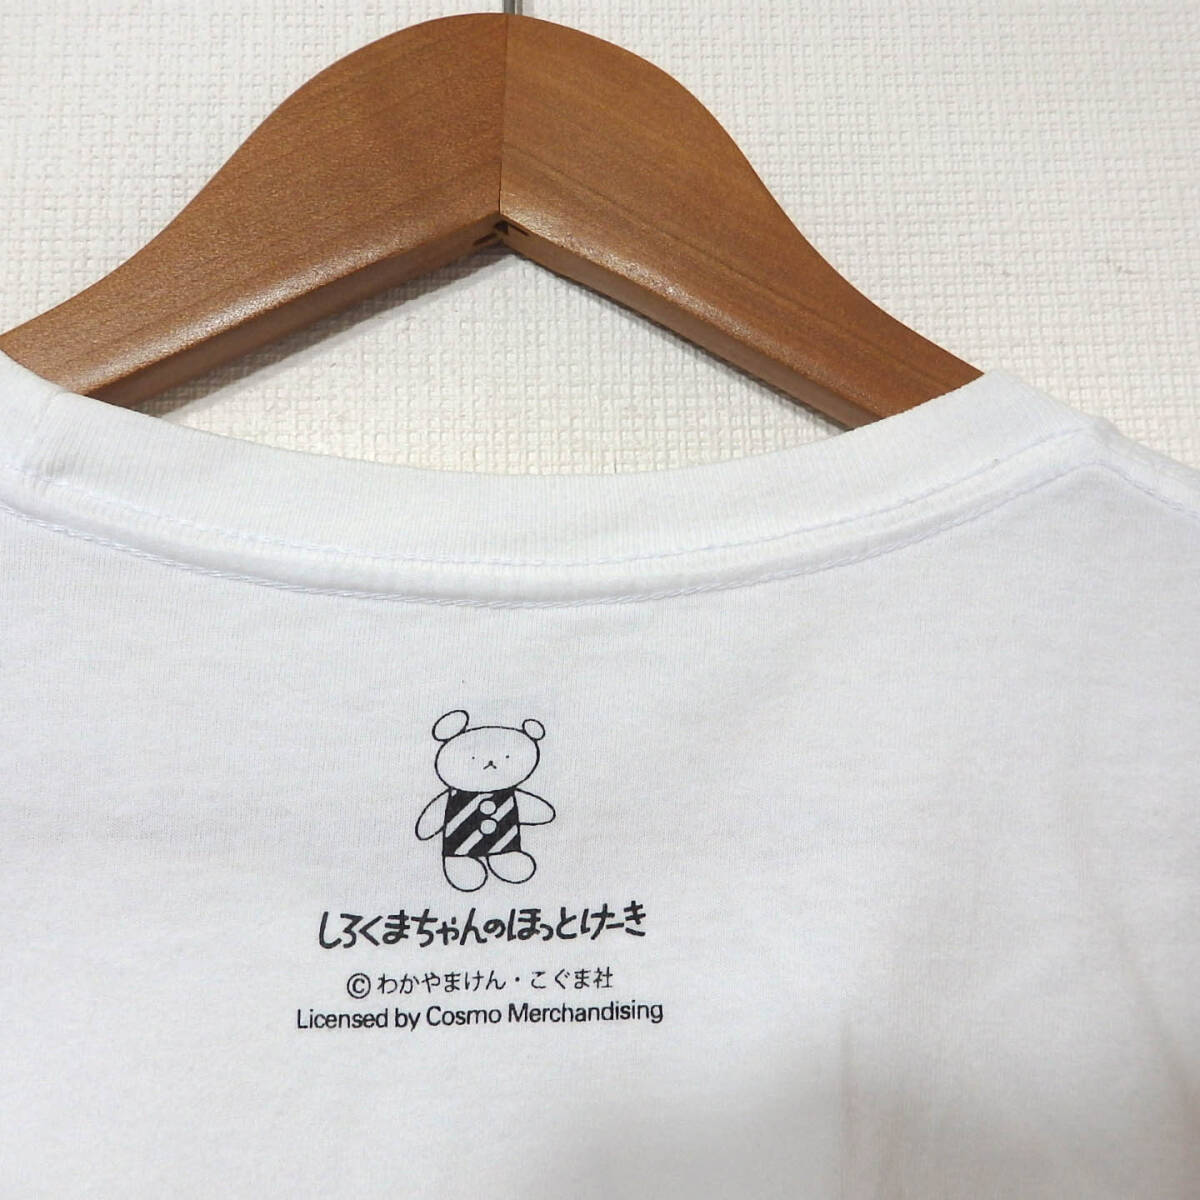 【送料無料】グラニフTシャツ/Mサイズ しろくまちゃんのほっとけーき Design Tshirts Store graniphの画像4